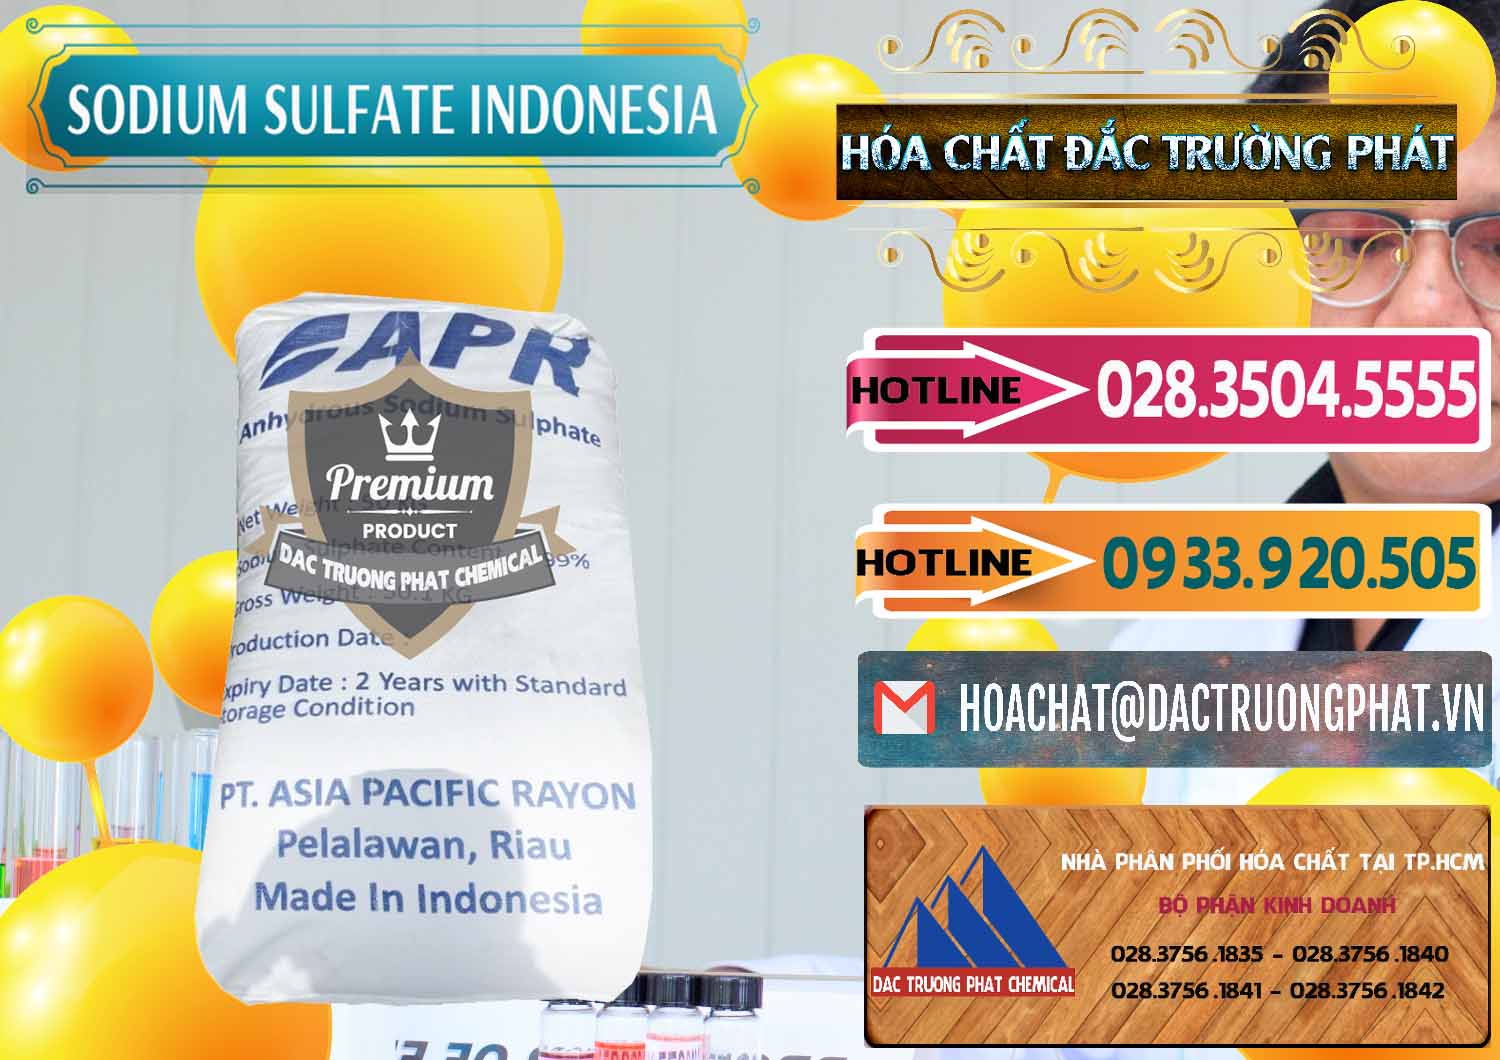 Chuyên bán và phân phối Sodium Sulphate - Muối Sunfat Na2SO4 APR Indonesia - 0460 - Công ty chuyên bán & cung cấp hóa chất tại TP.HCM - dactruongphat.vn